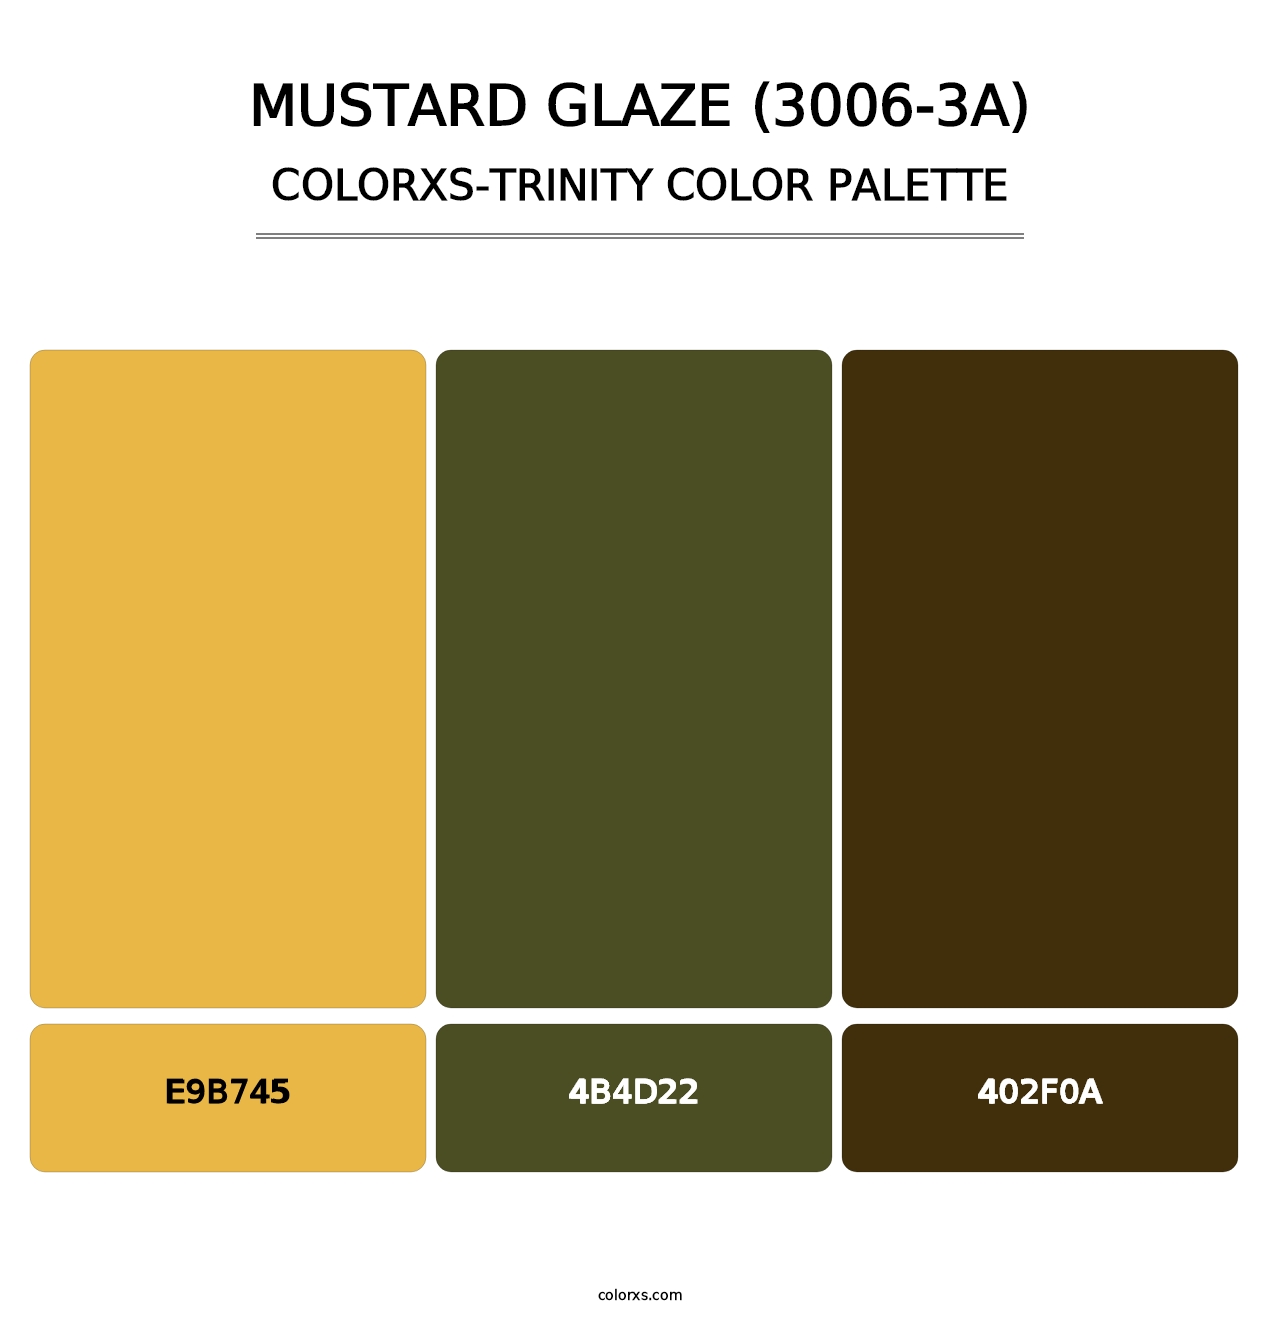 Mustard Glaze (3006-3A) - Colorxs Trinity Palette